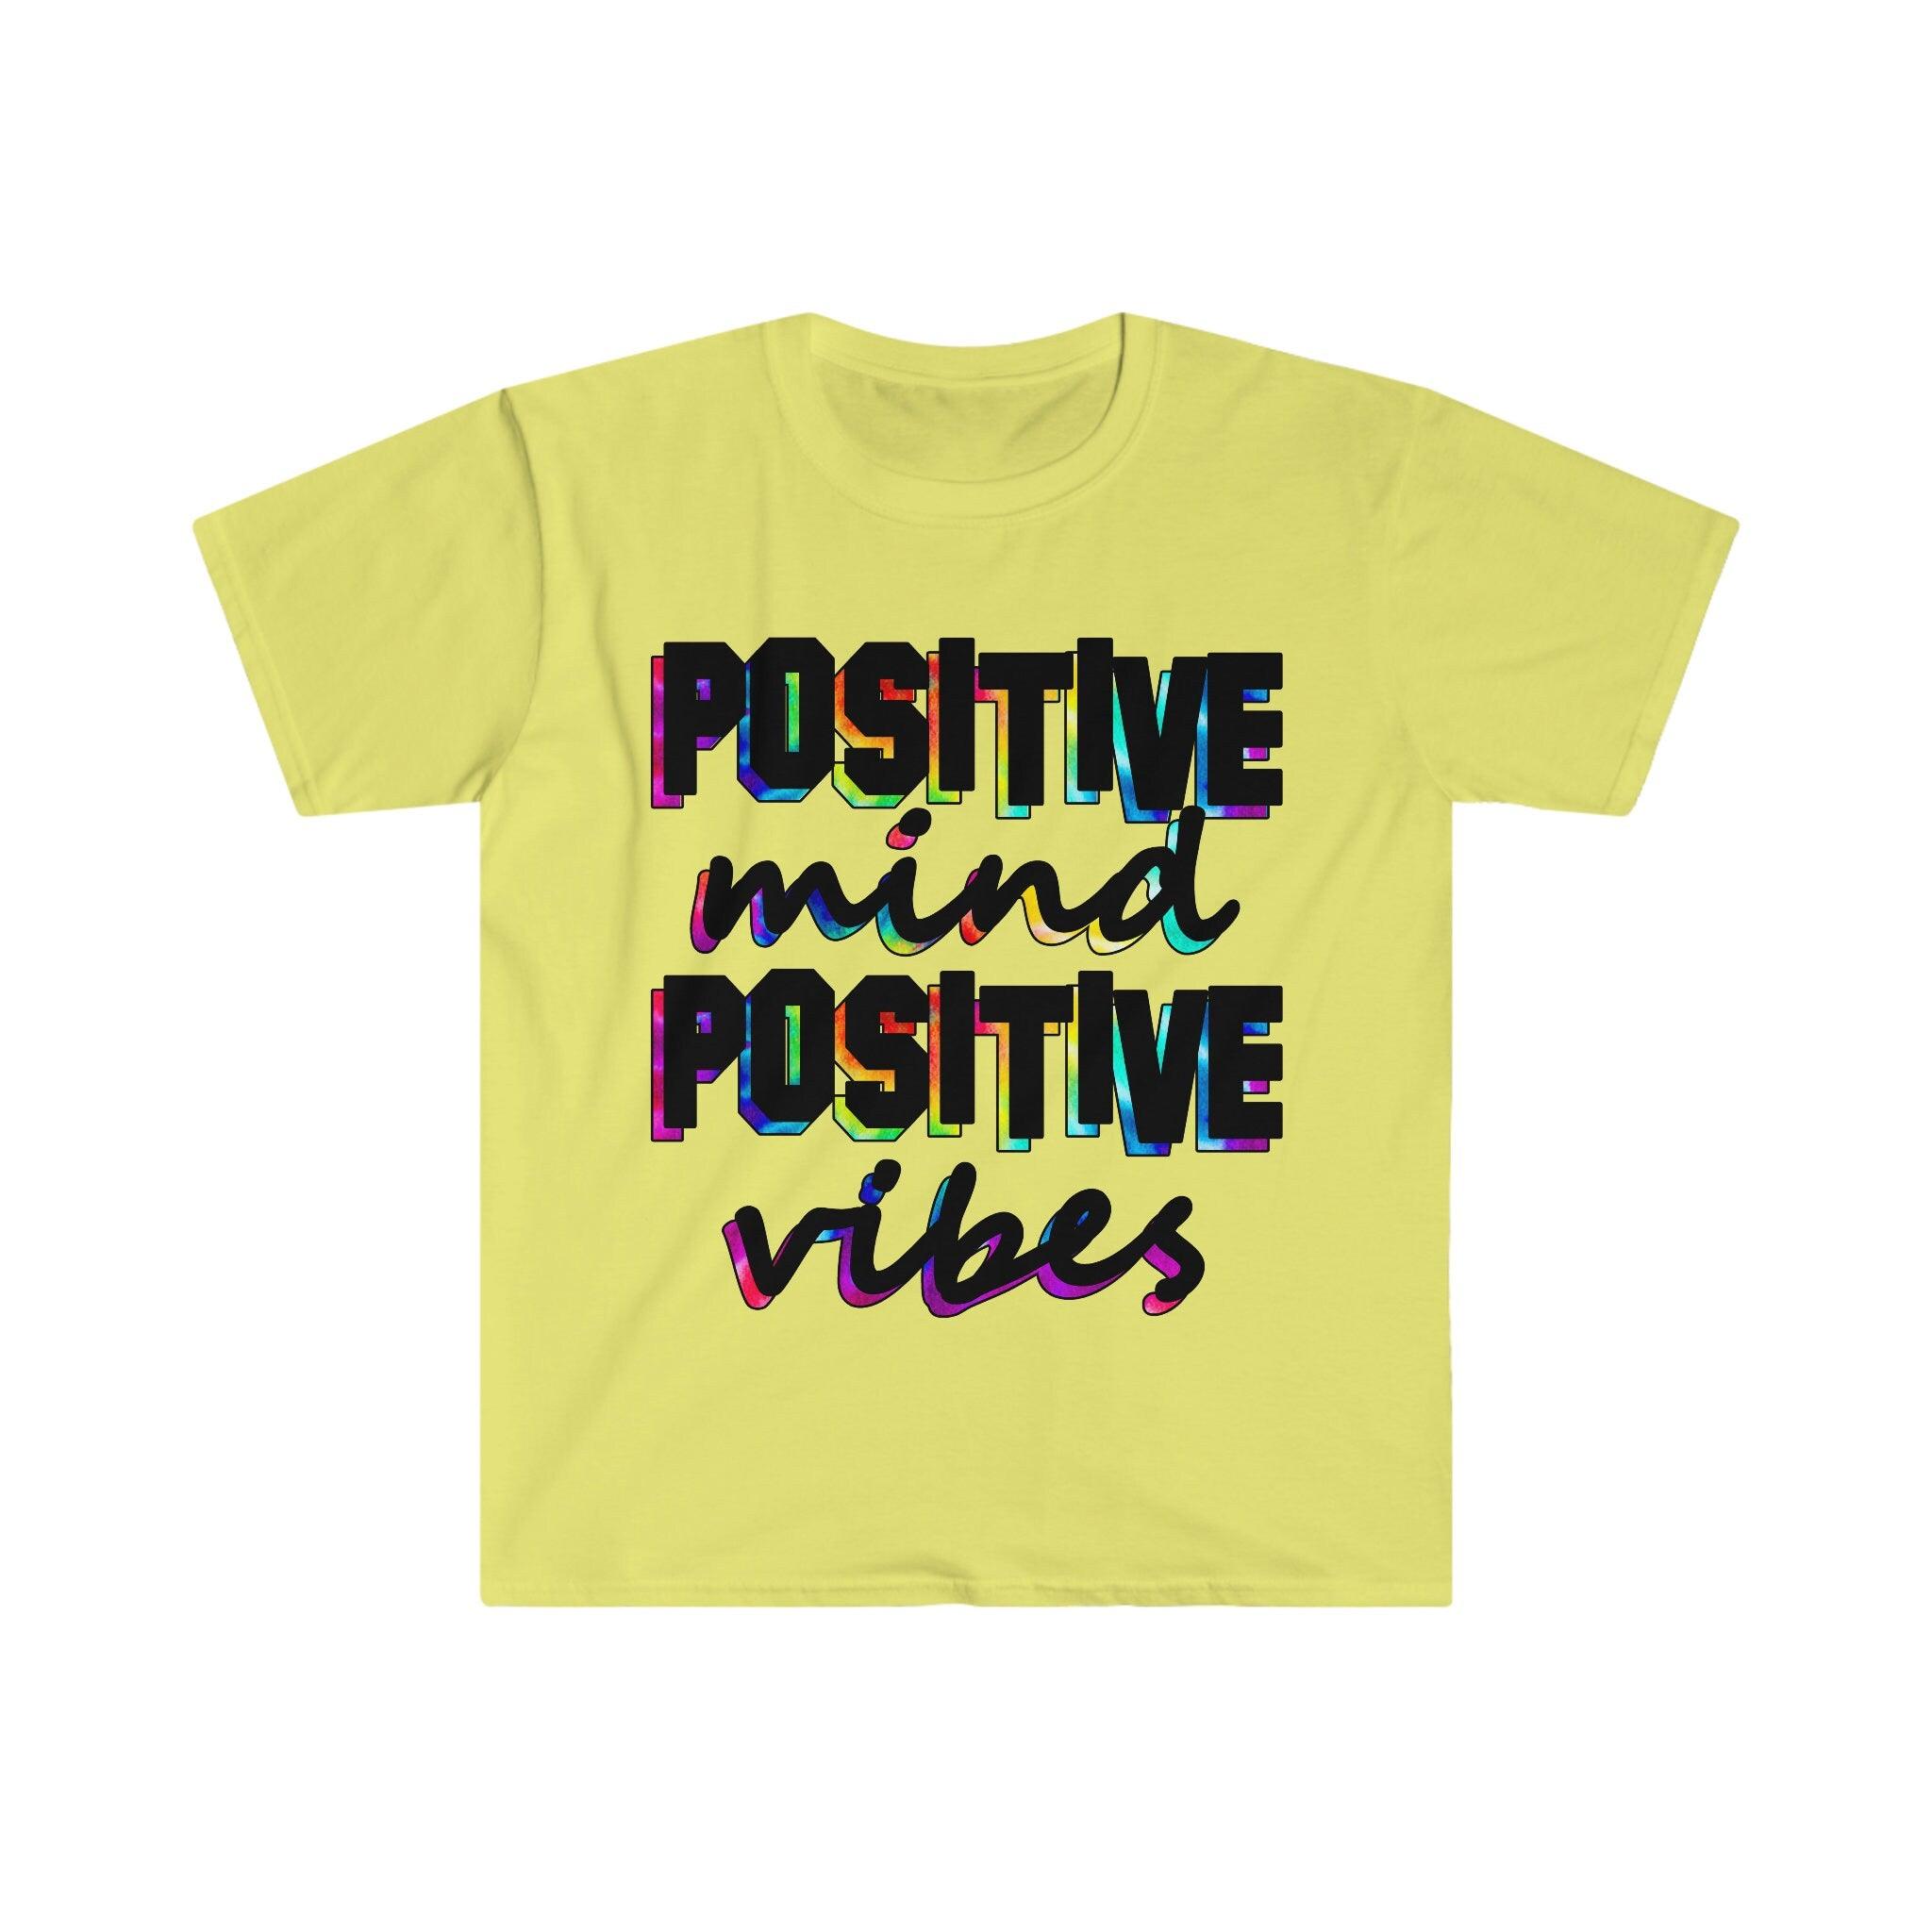 Pozitif Zihin Pozitif Vibes Tişörtü, Motivasyon Gömleği, İlham Verici Gömlek, Pozitiflik Tişörtü - plusminusco.com